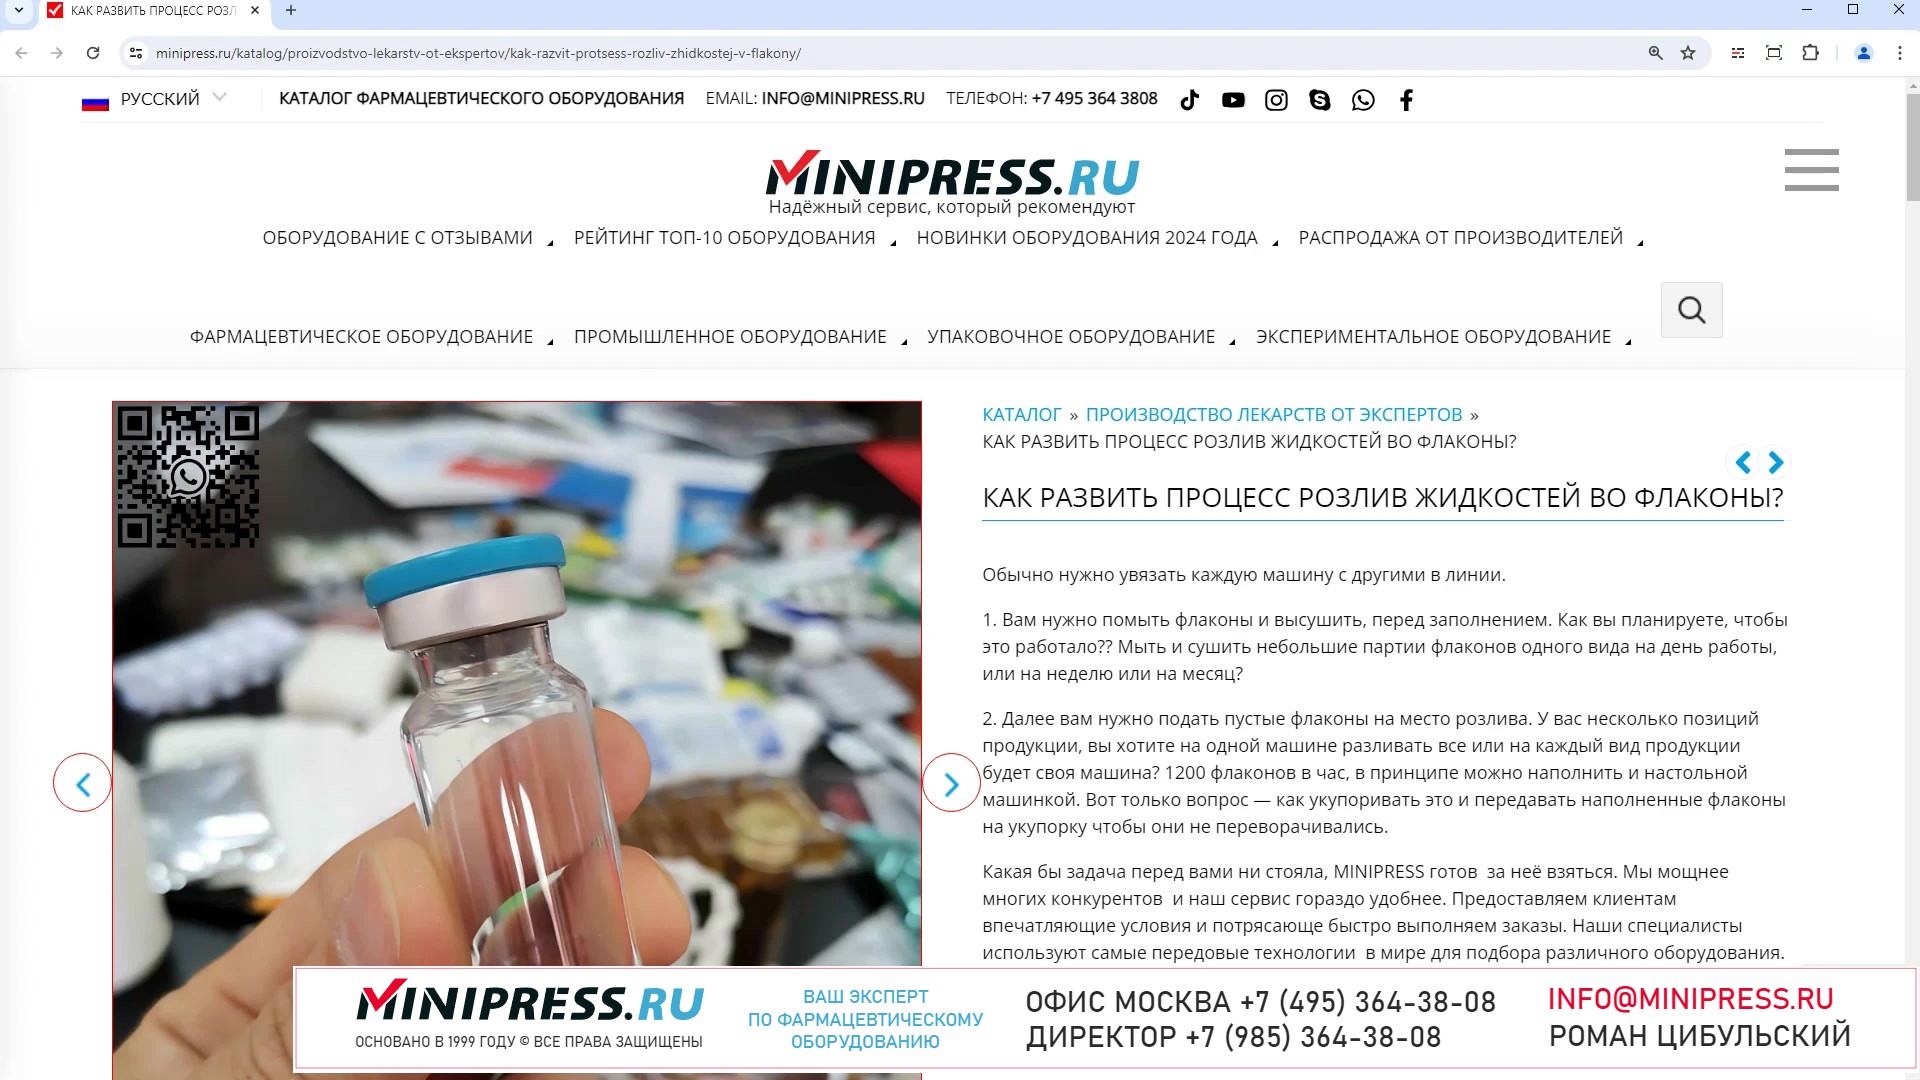 Minipress.ru Как развить процесс розлив жидкостей во флаконы